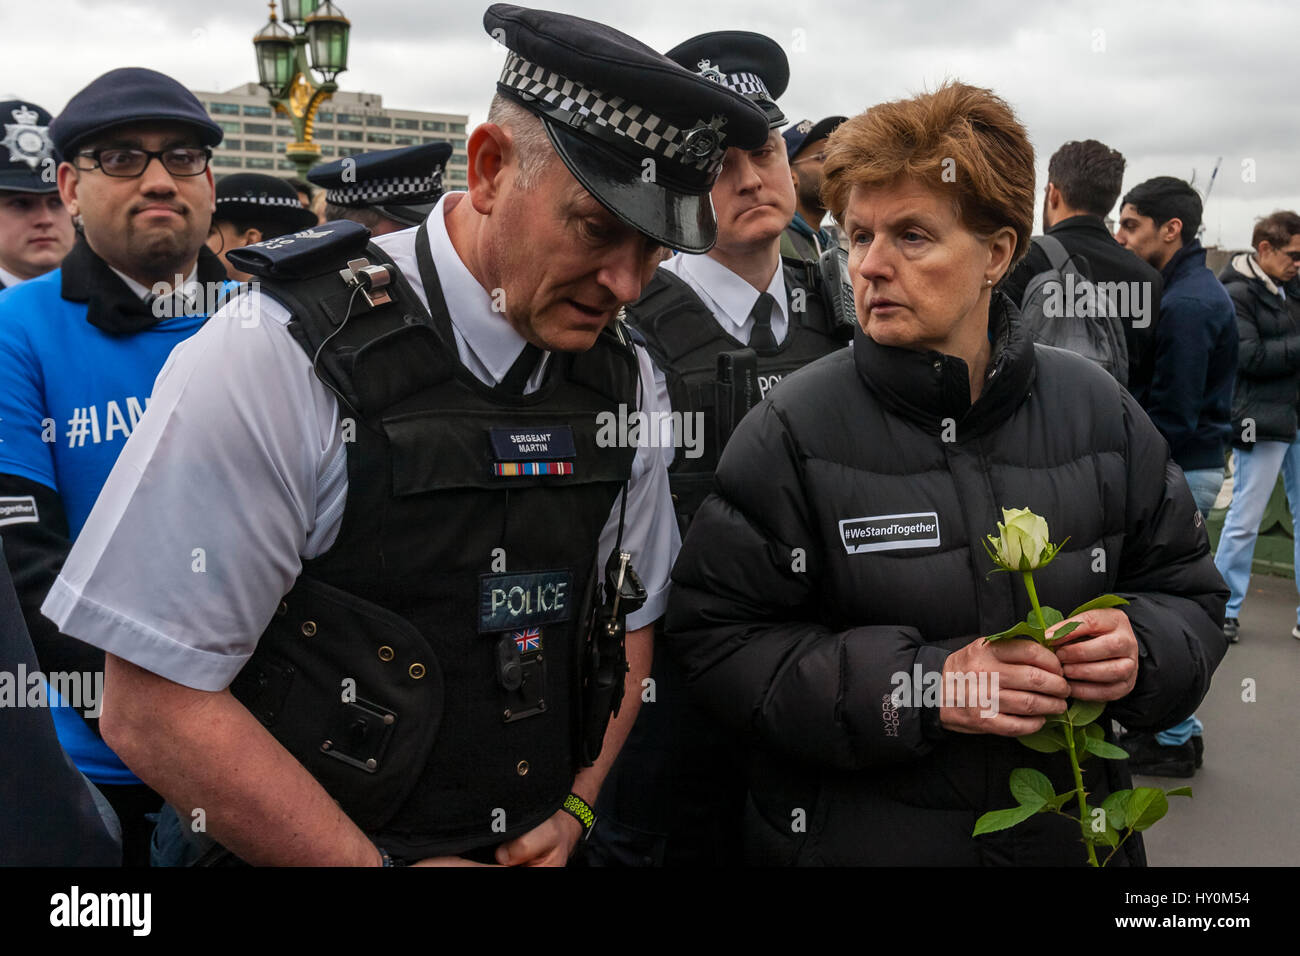 Une semaine après l'attaque terroriste de Londres a rencontré la police et les membres du public de rendre hommage aux victimes, le pont de Westminster, London, UK Banque D'Images